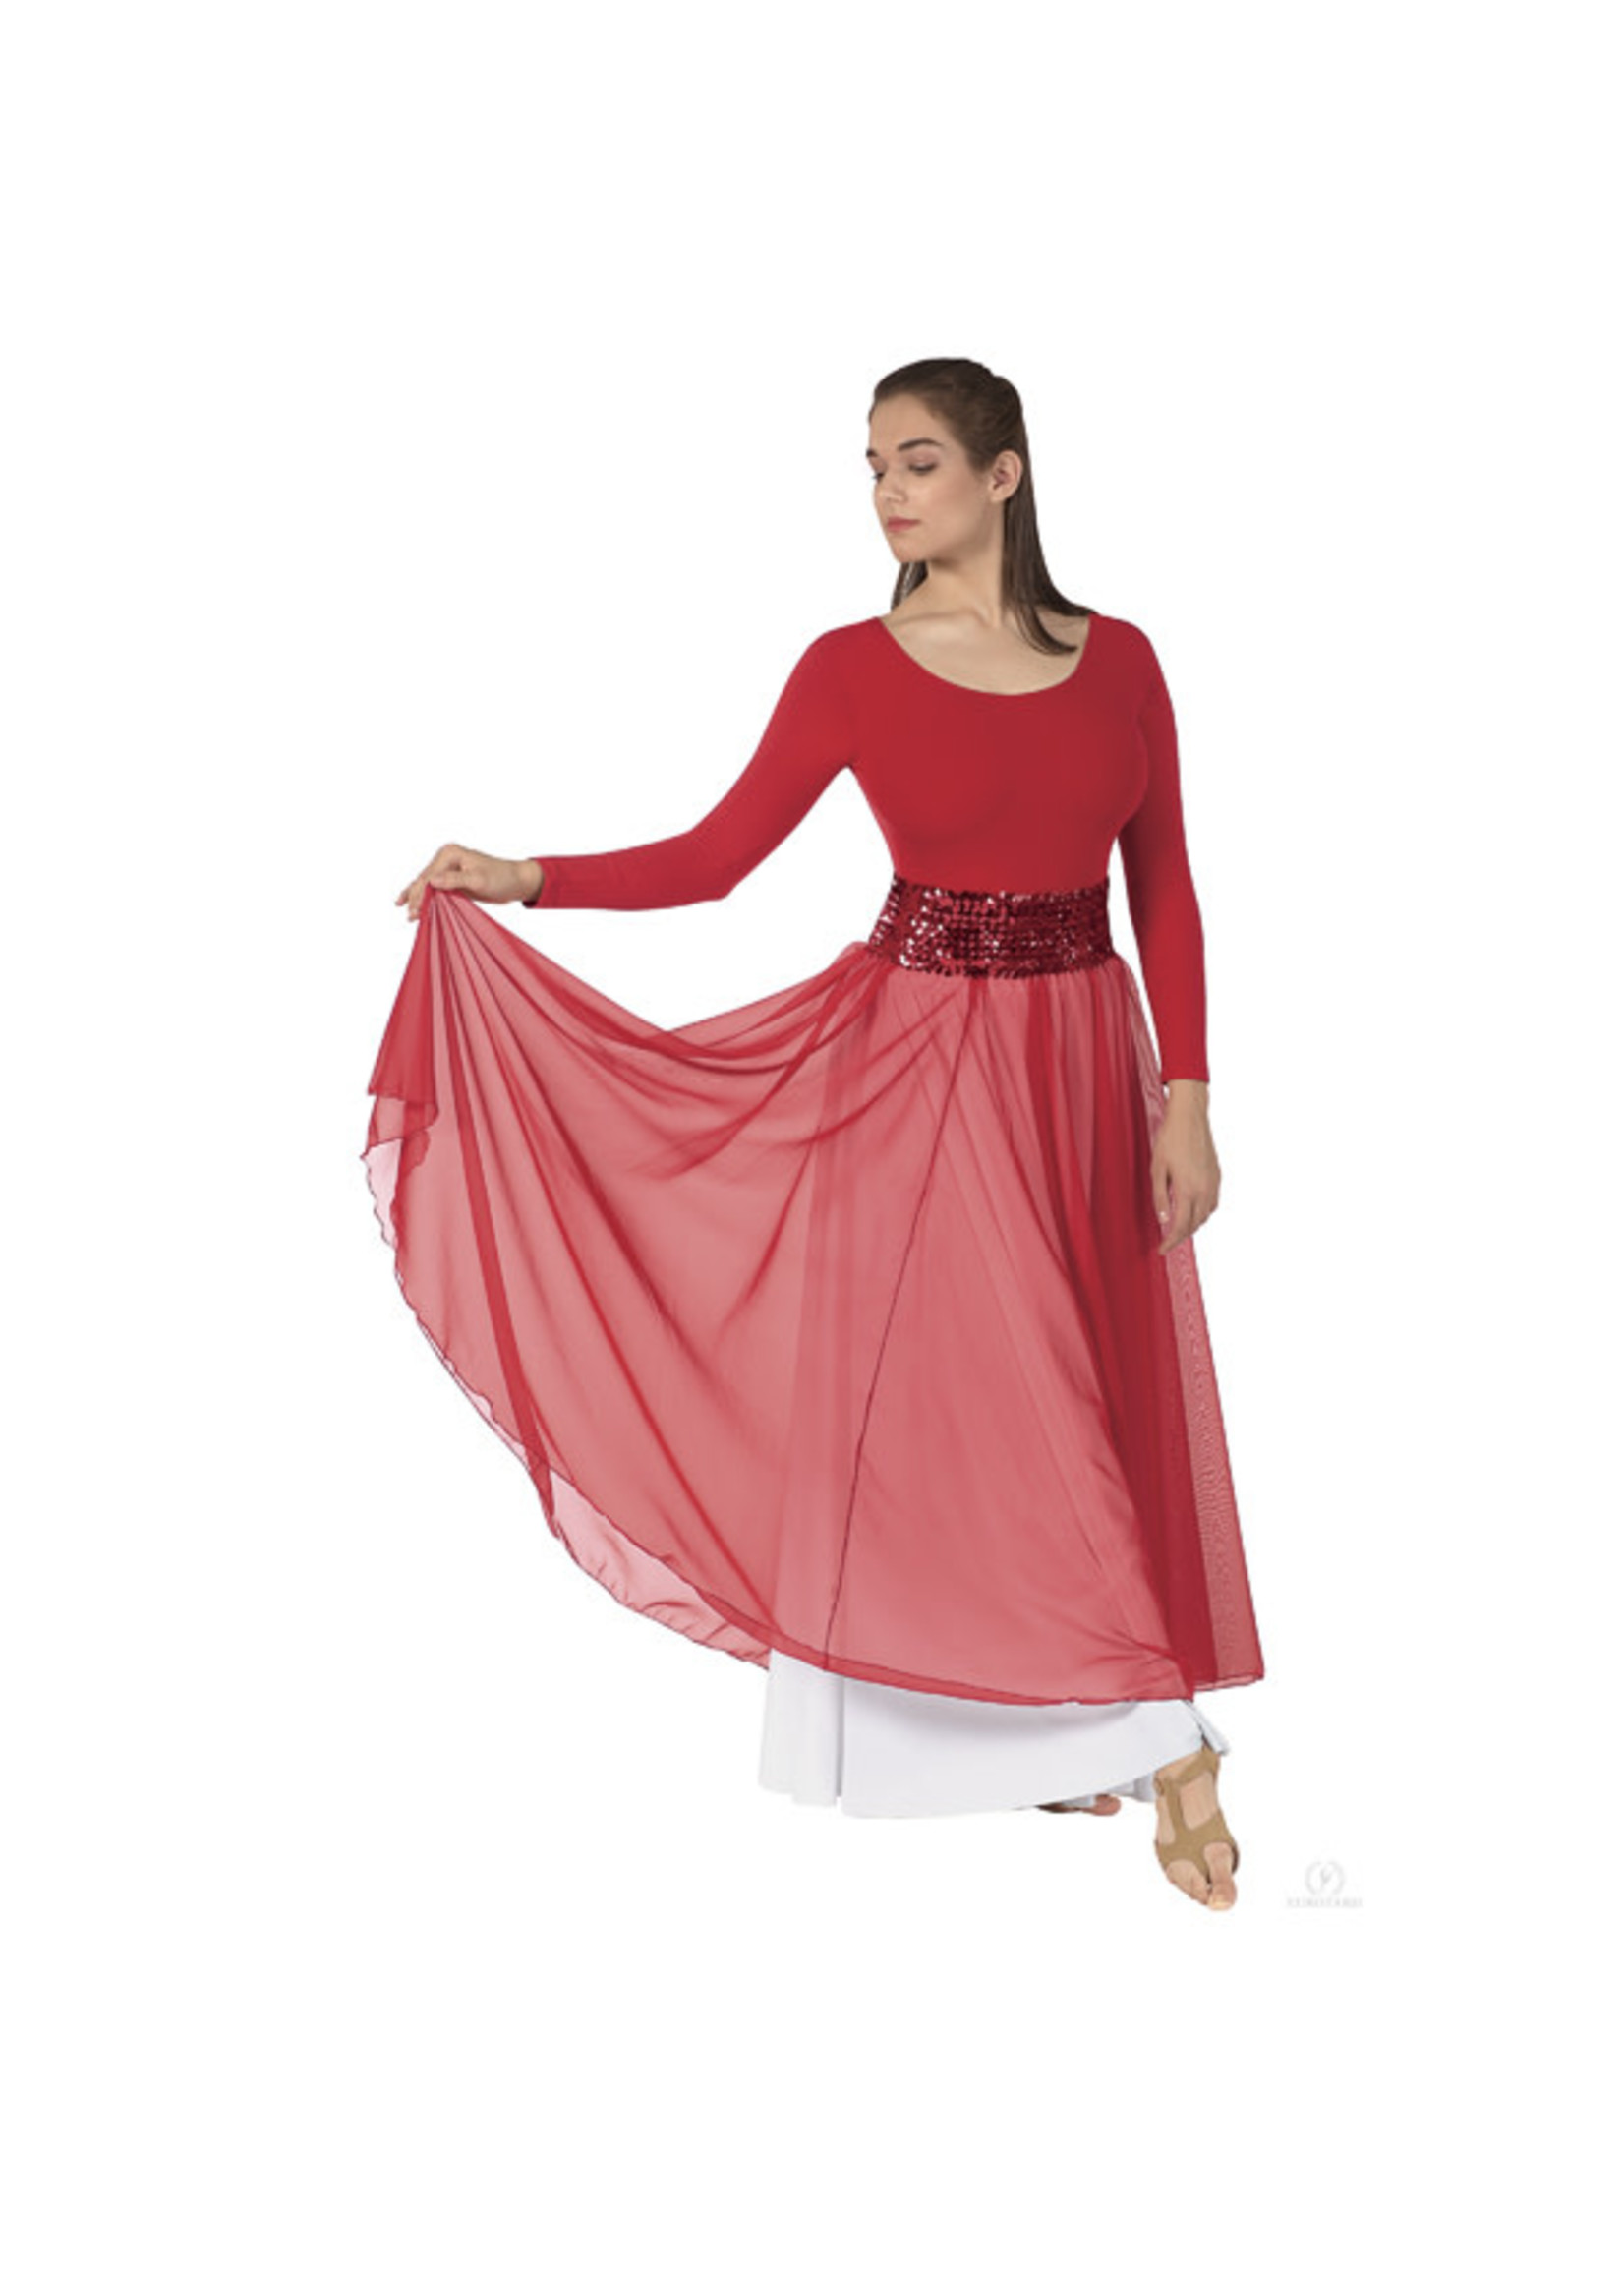 Sheer Devotion Chiffon Full Length Overlay Skirt